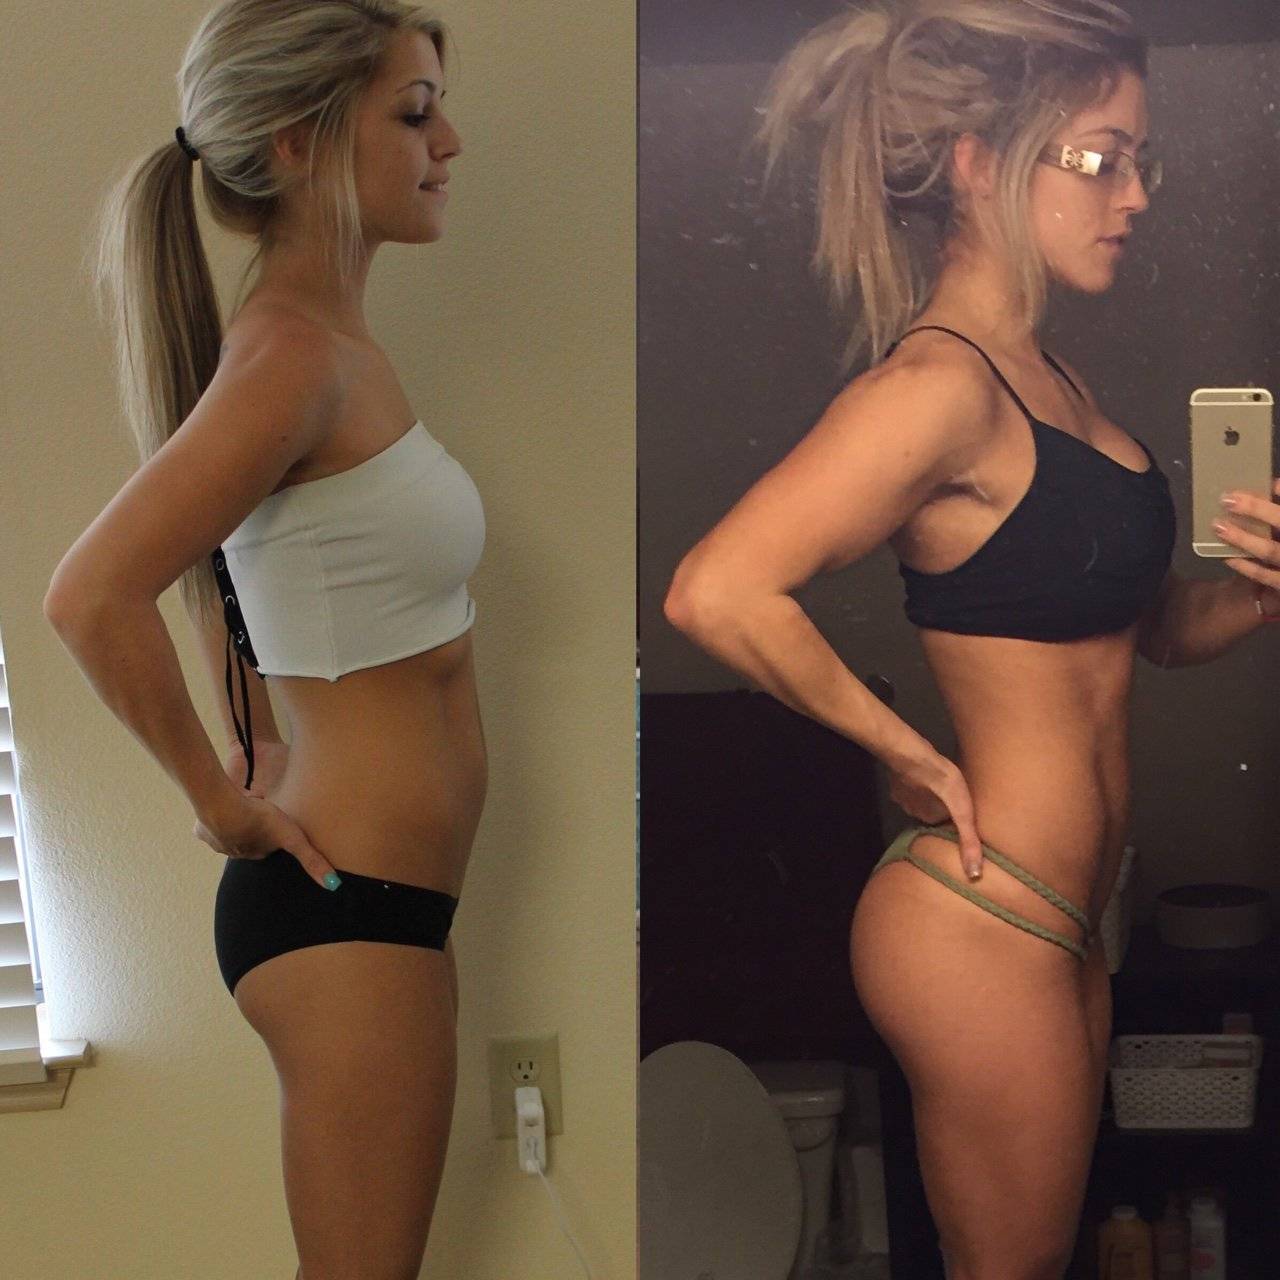 О похудении до и после: девушки после похудения, как изменилась их жизнь